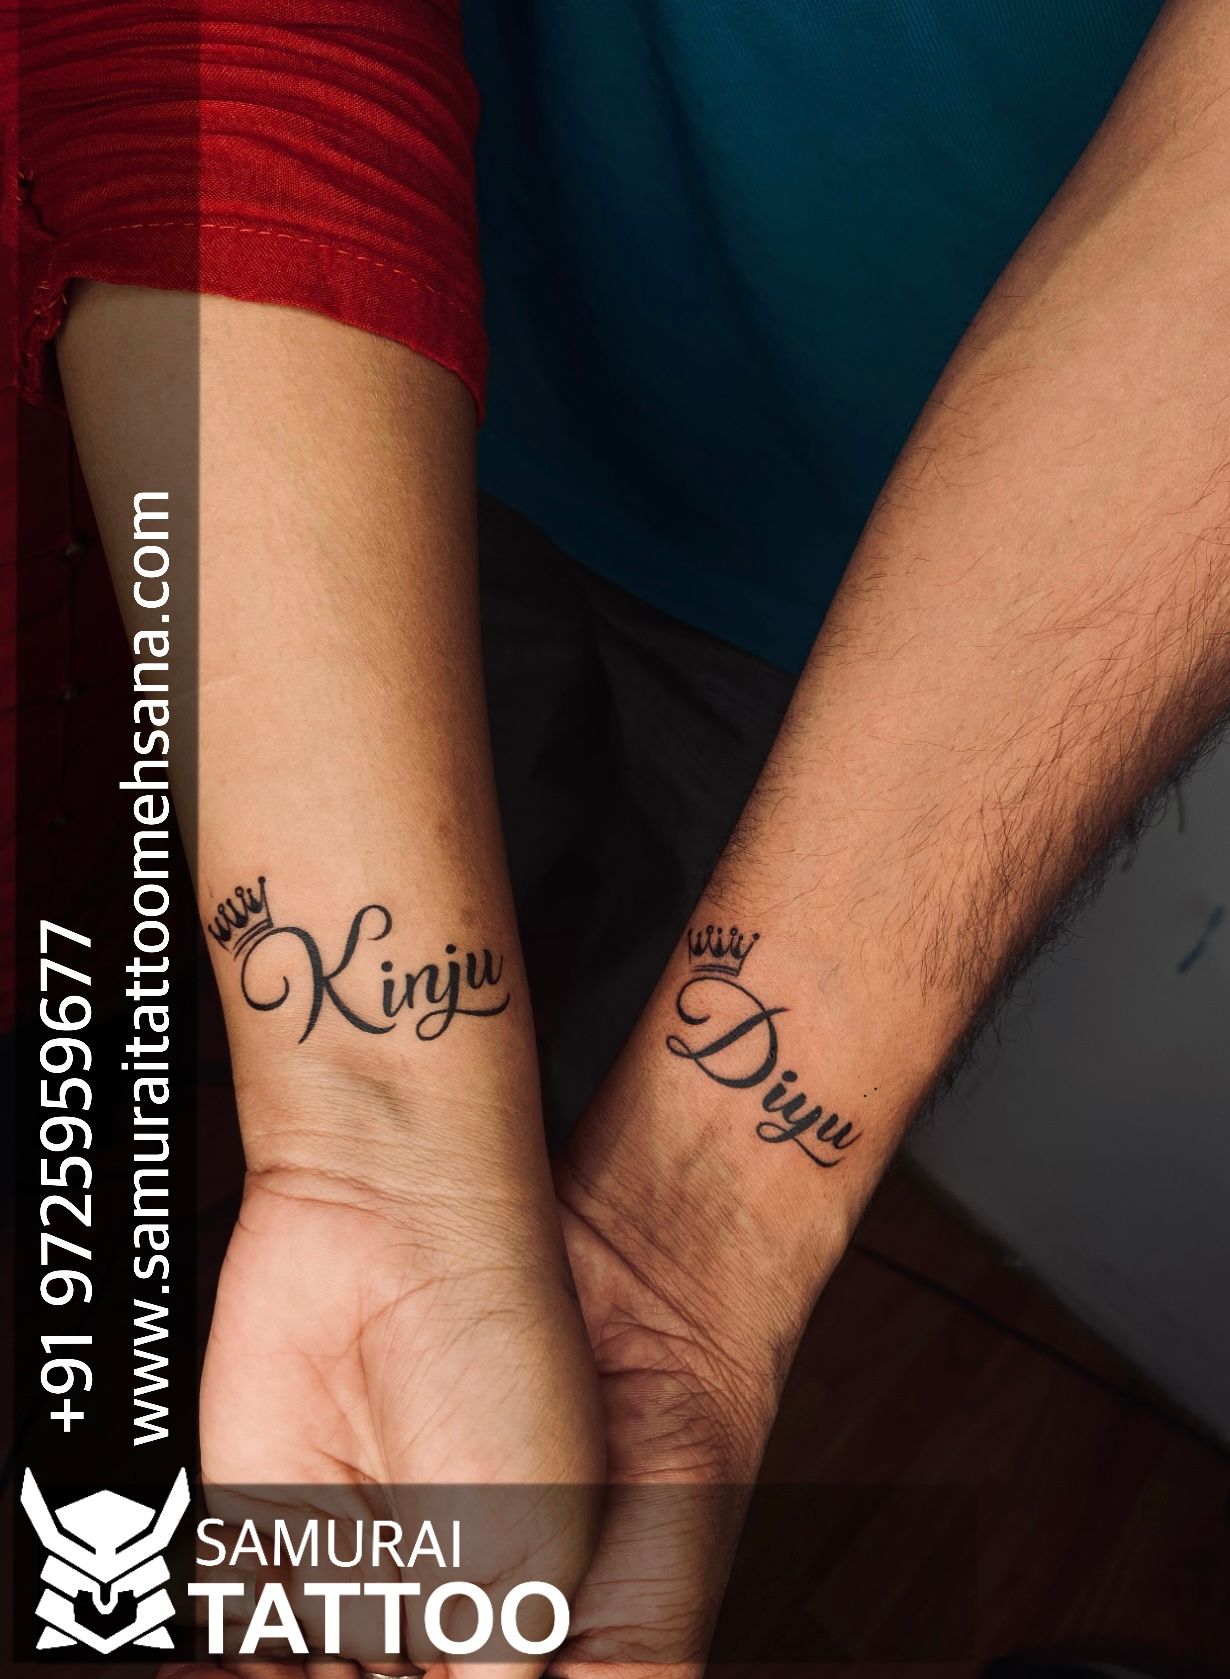 Tattoo uploaded by Vipul Chaudhary • Kinju name tattoo |kinju tattoo  |Couple tattoo |Tattoo for couple |Diyu name tattoo |Diyu tattoo • Tattoodo